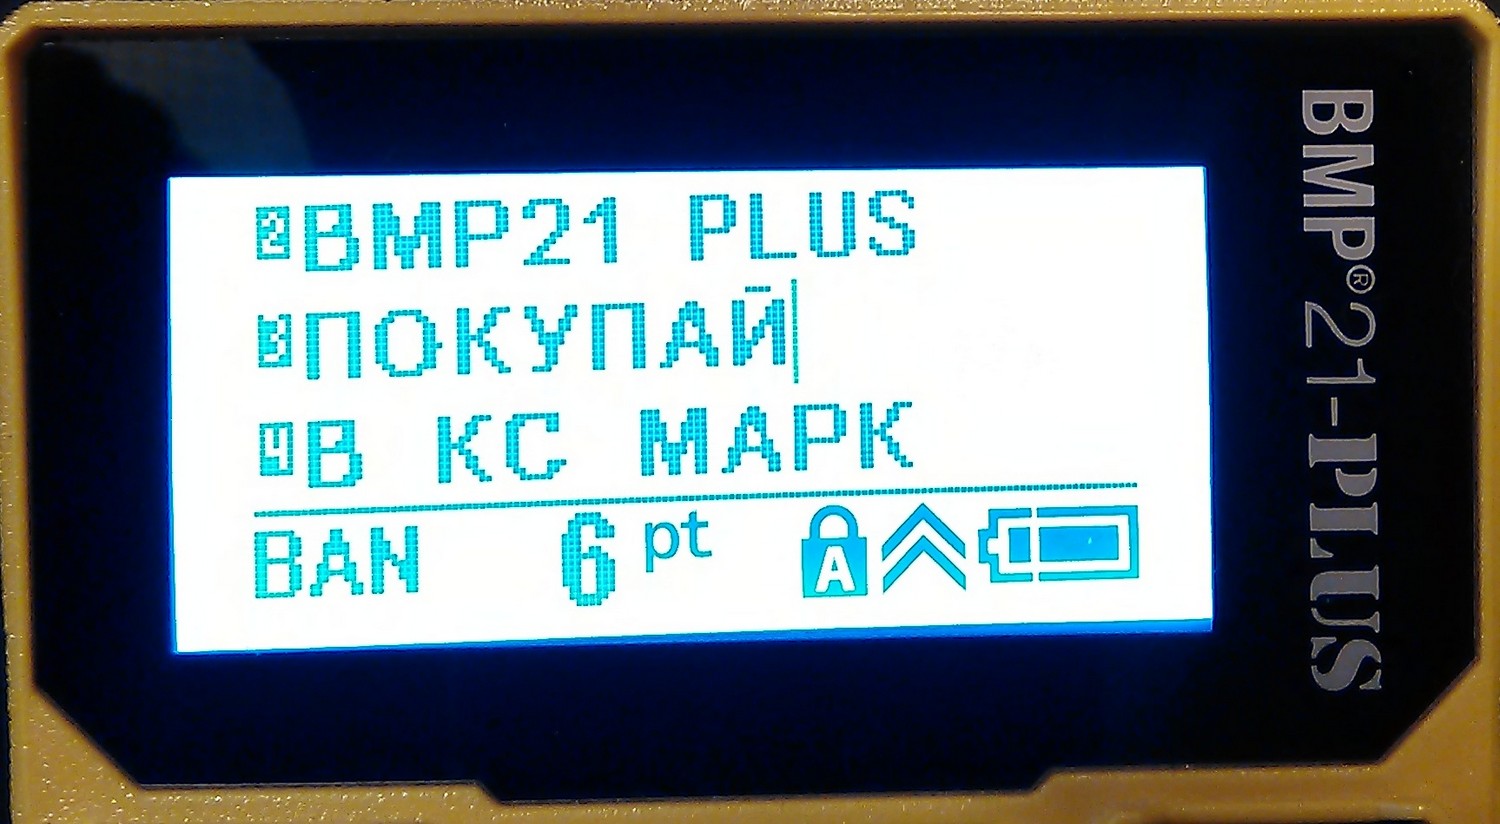 Шрифт на дисплее принтера Brady BMP 321 Plus